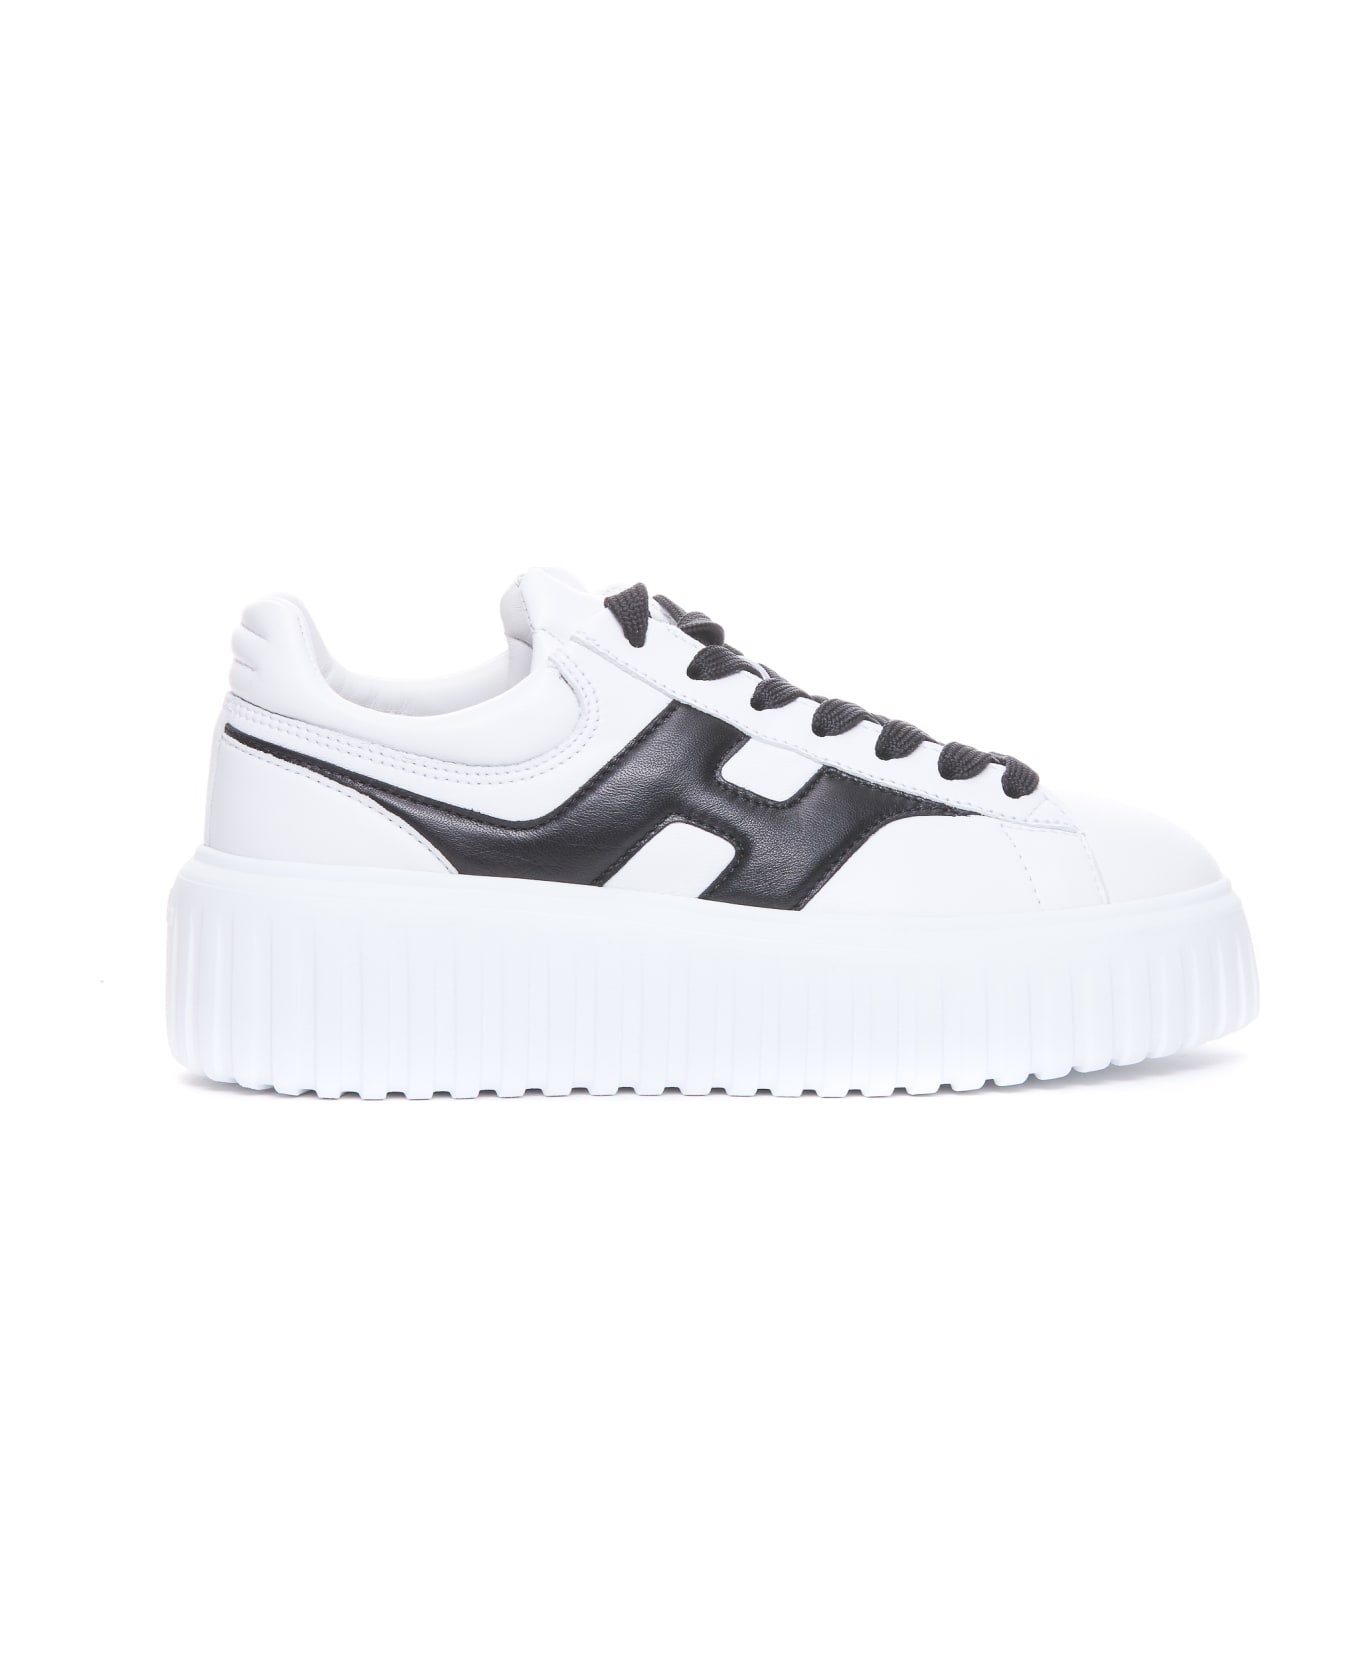 Hogan H-stripes Sneakers - White